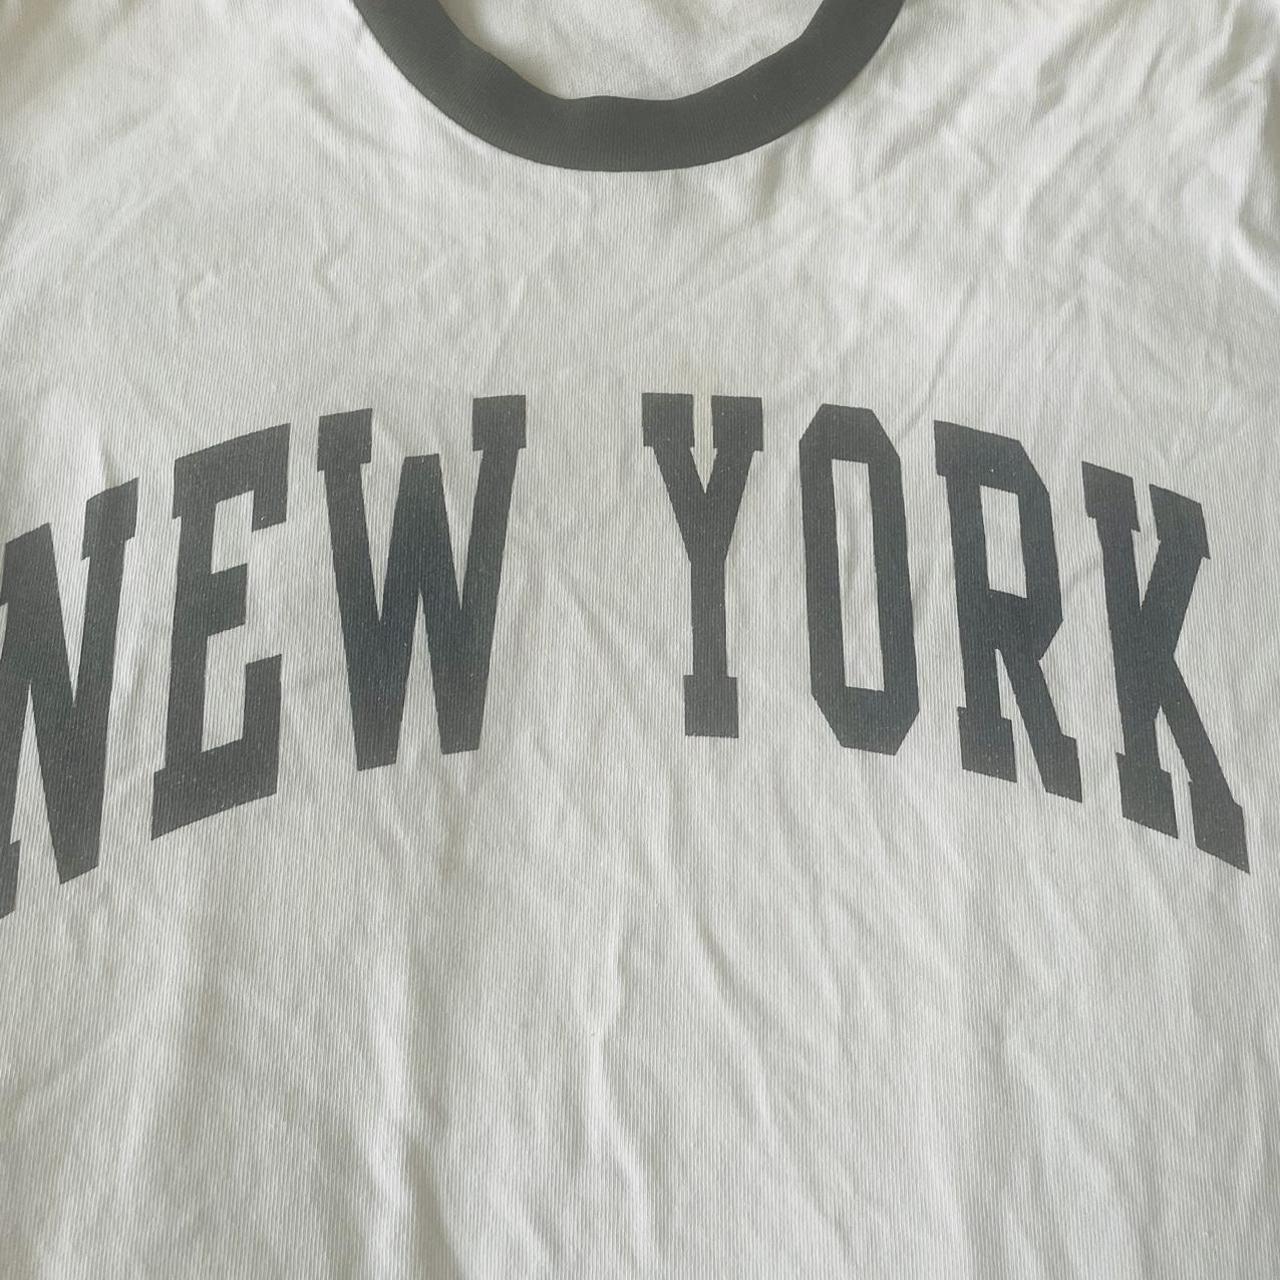 Brandy Melville Long New York T-shirt 🗽🗽🫂 I loved... - Depop